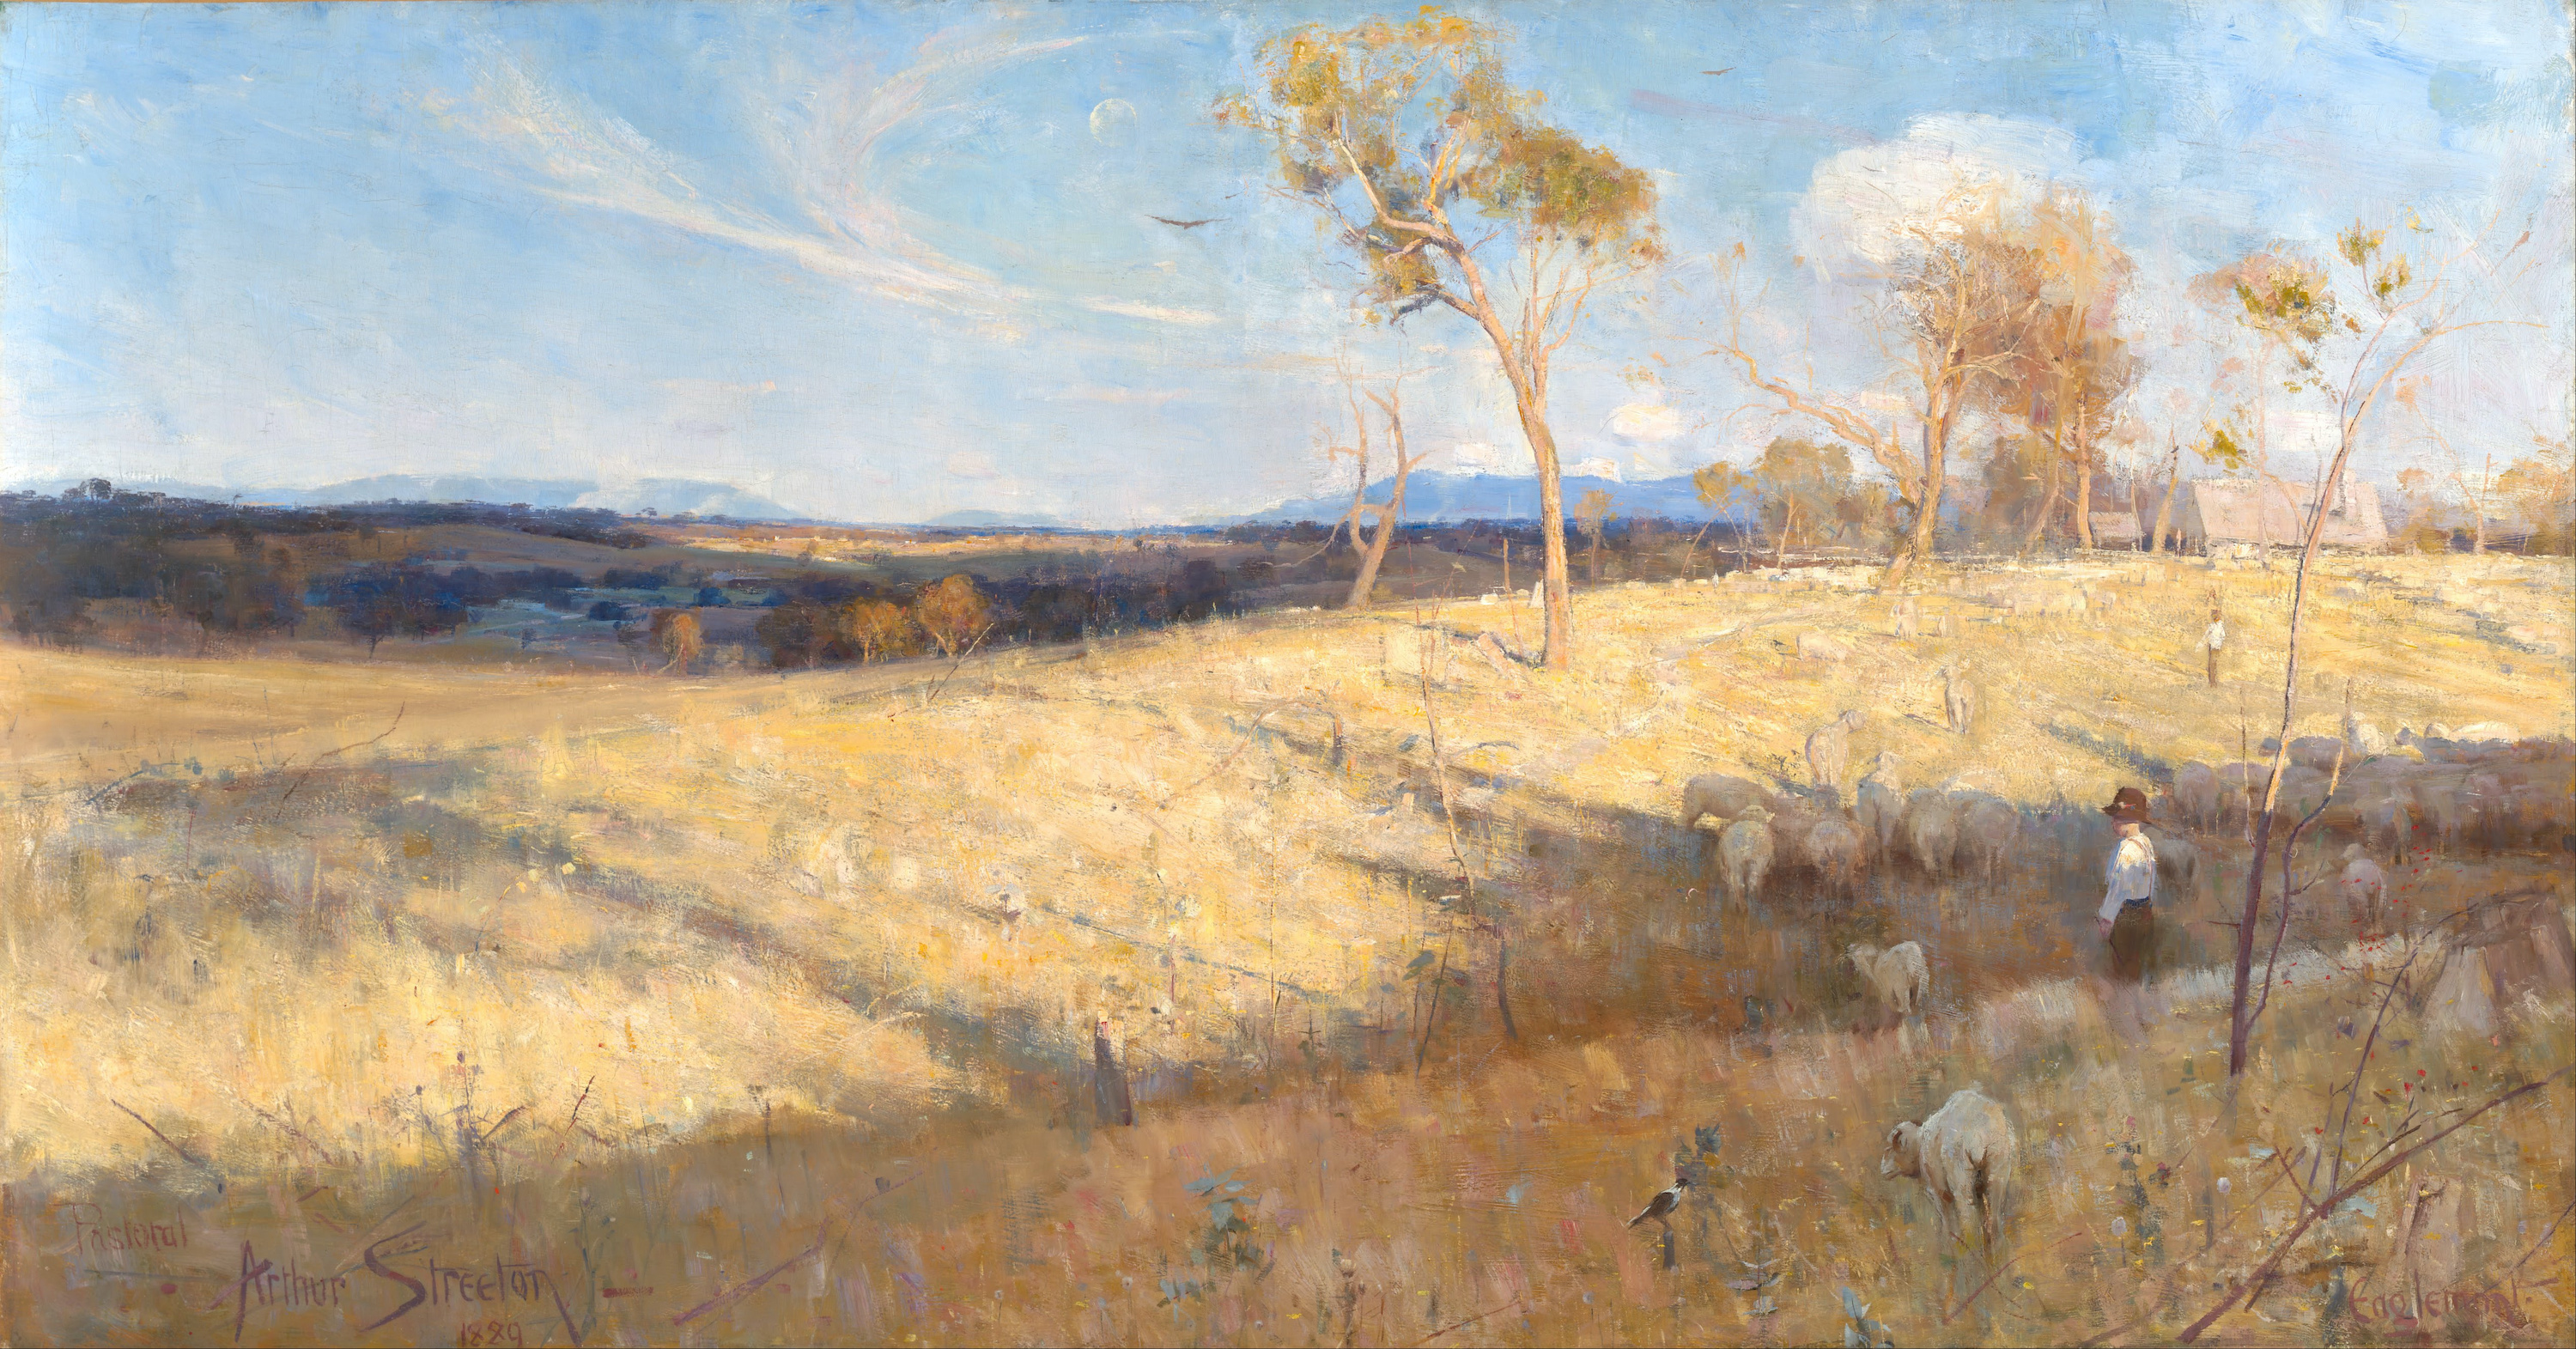 Arany Nyár, Eaglemont by Arthur Streeton - 1889 - 81.3 × 152.6 cm 